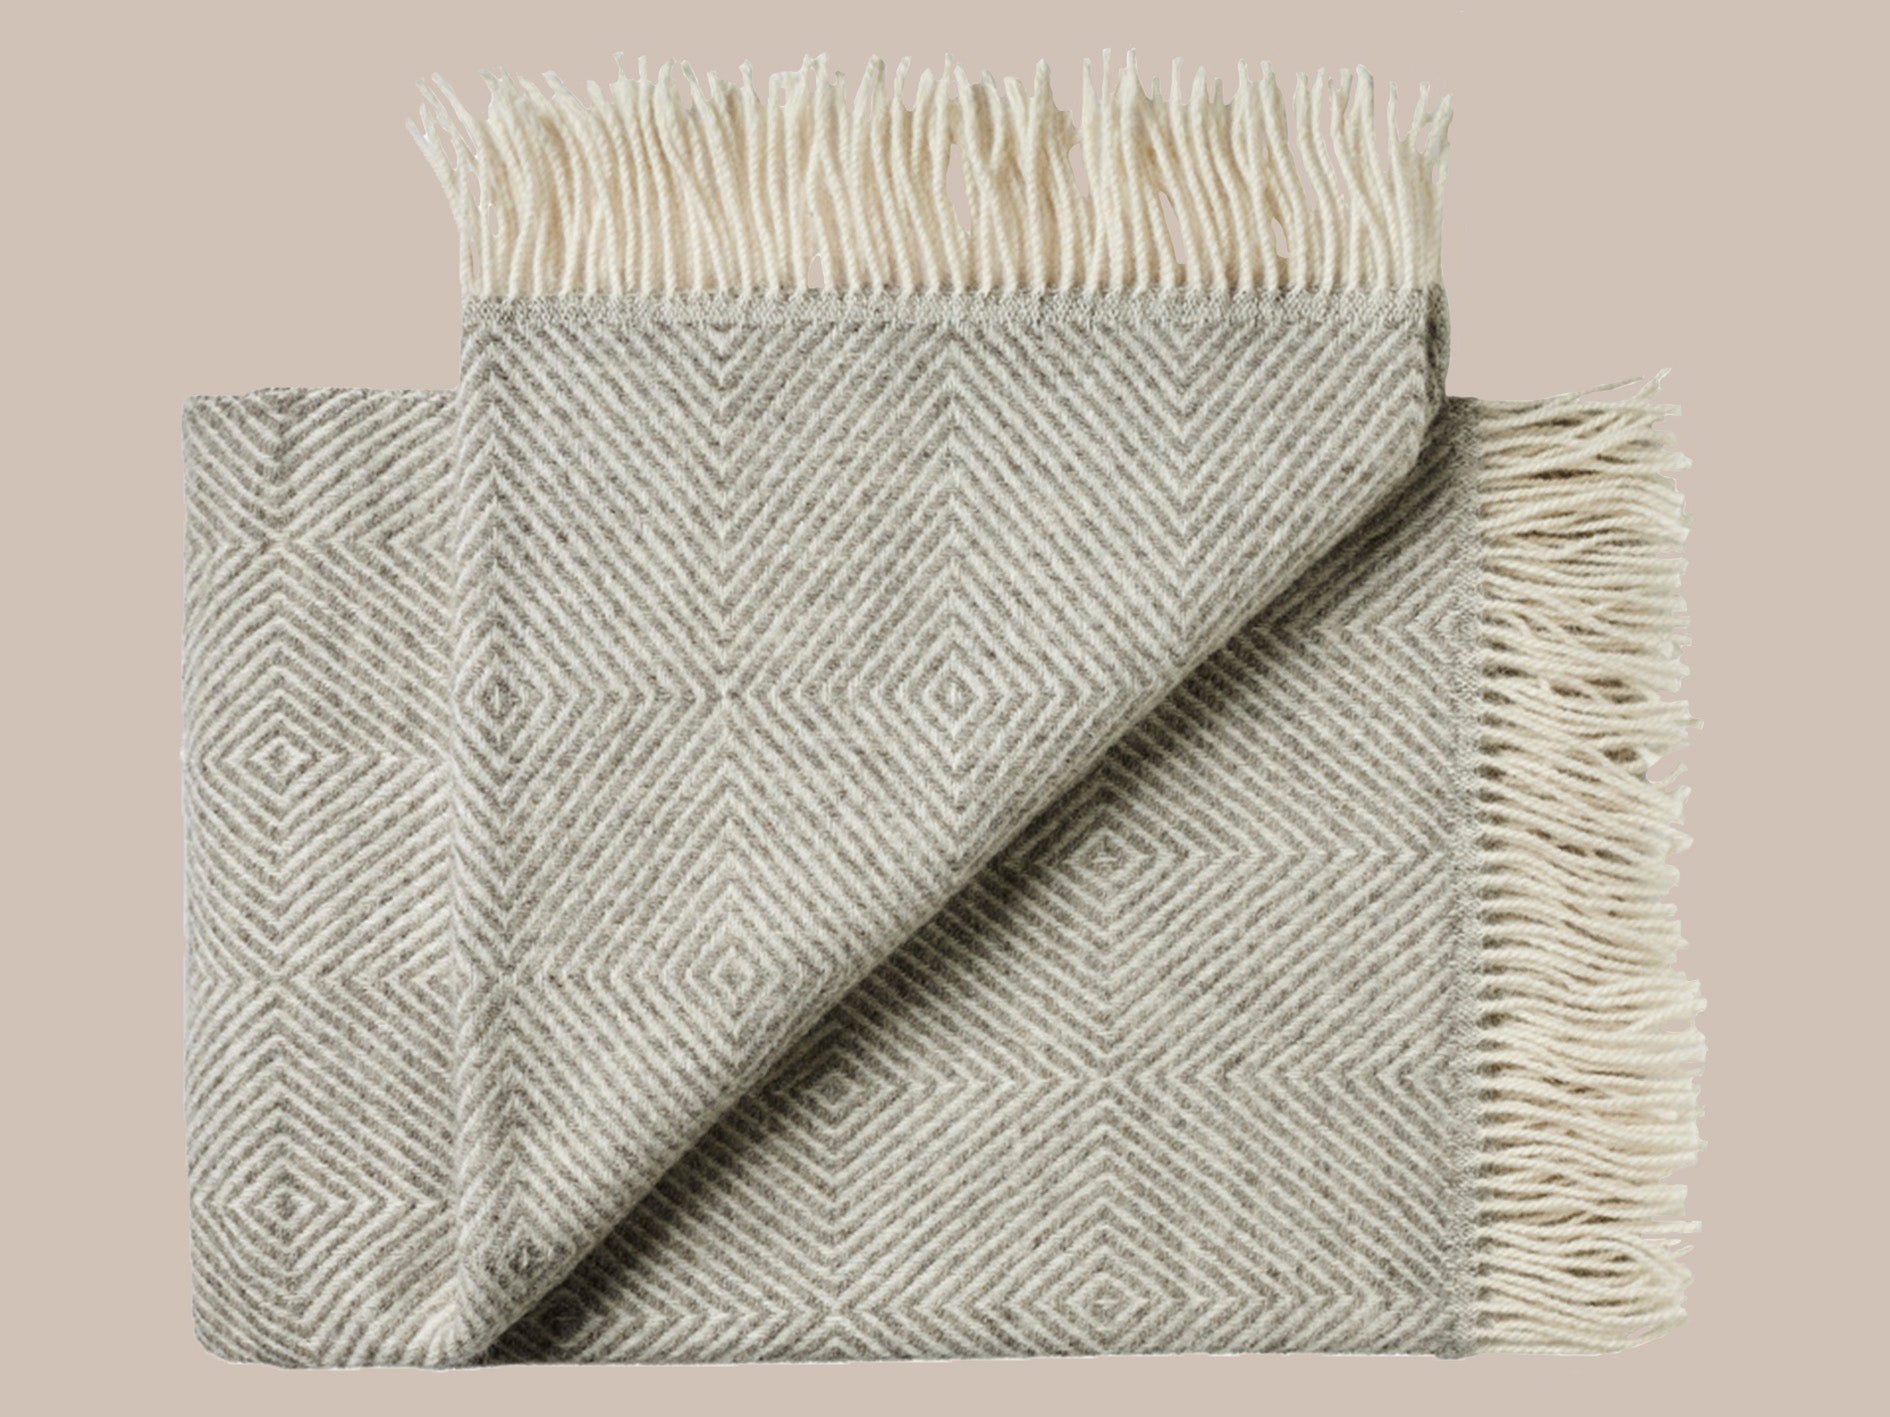 Uldplaid med frynser i skandinavisk uld i de smukkeste naturlige farver og mønstre. Et varmt bæredygtigt uldtæppe til dig , der elsker at varme dig med et tæppe.. Dette tæppe er i et smukt afstemt mønster i lys beige og lys grå med lys beige frynser.